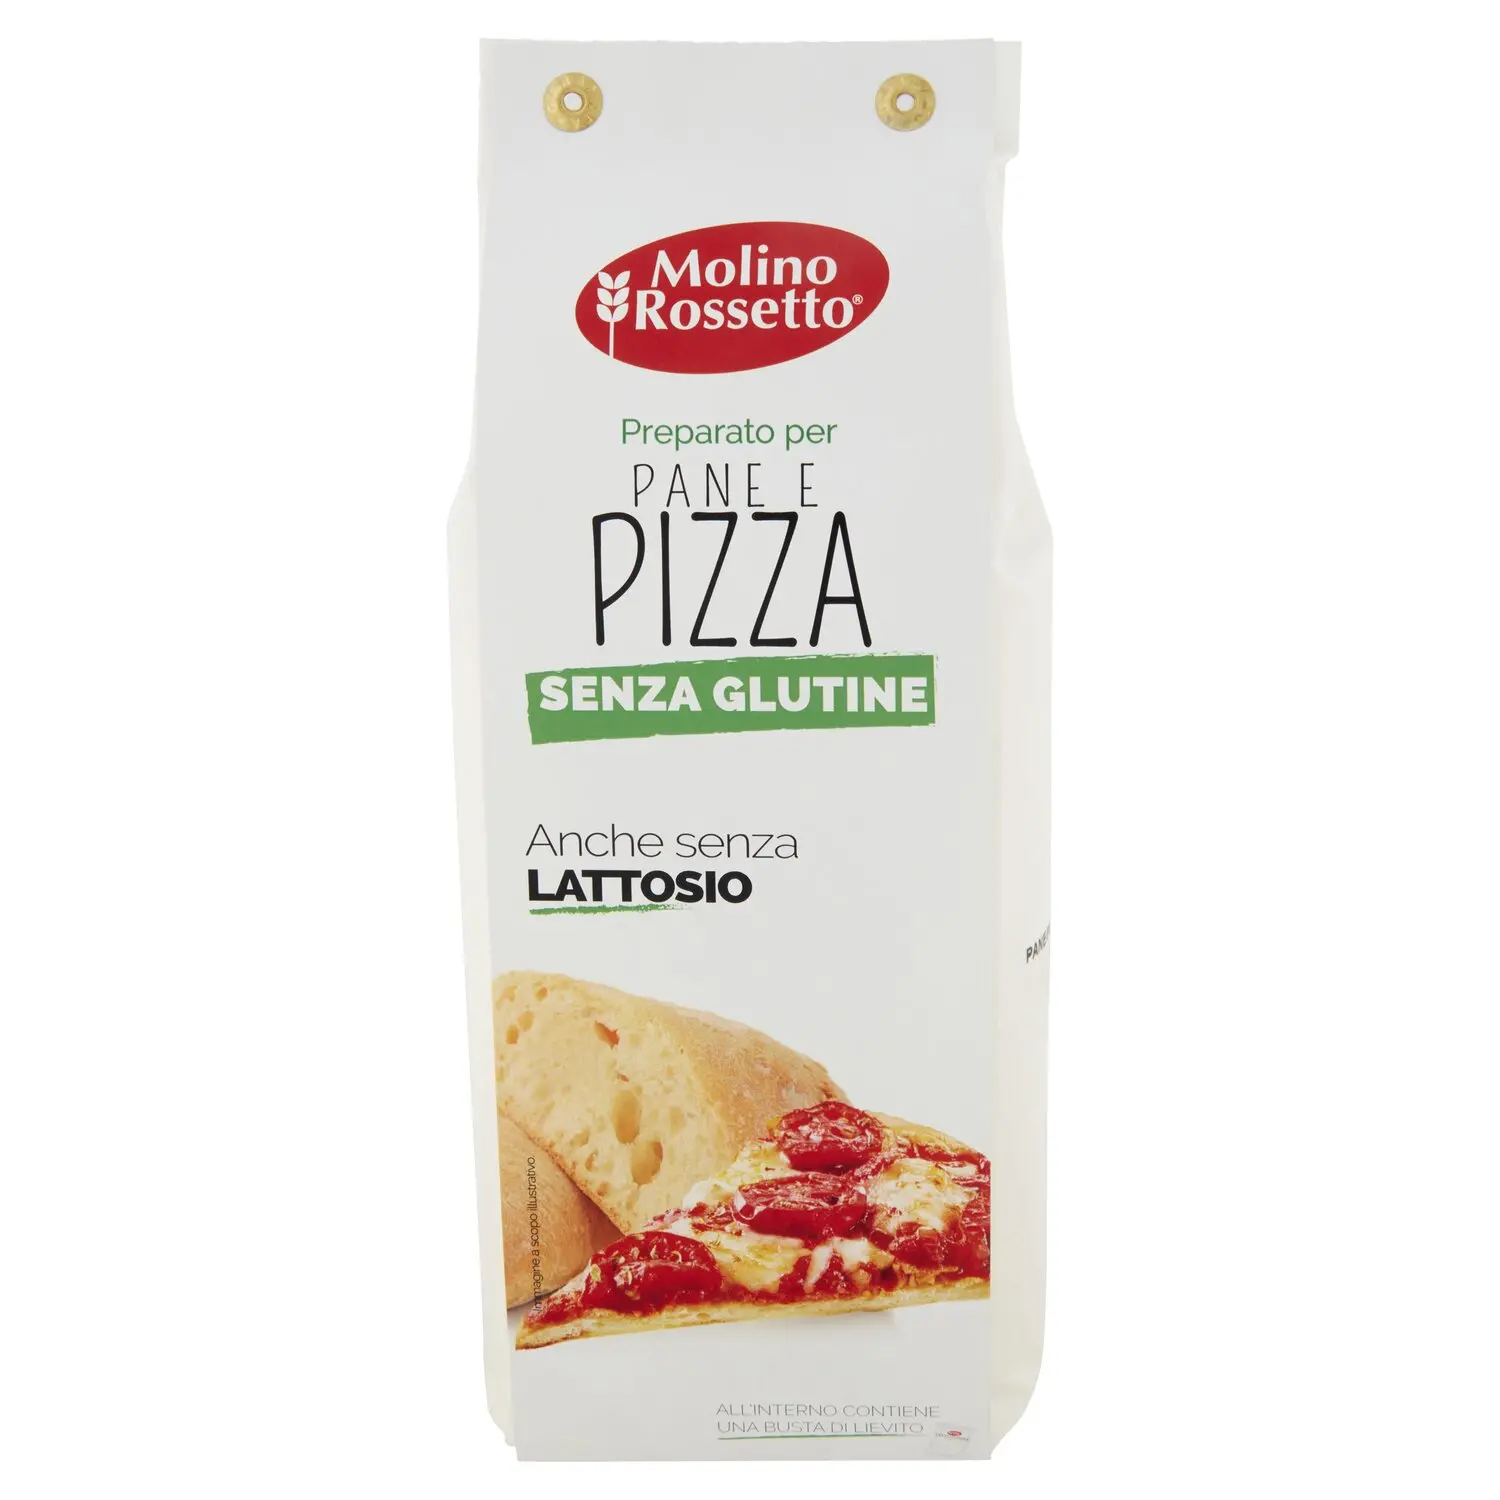 Molino Rossetto Preparato per Pane e Pizza Senza Glutine 500 g